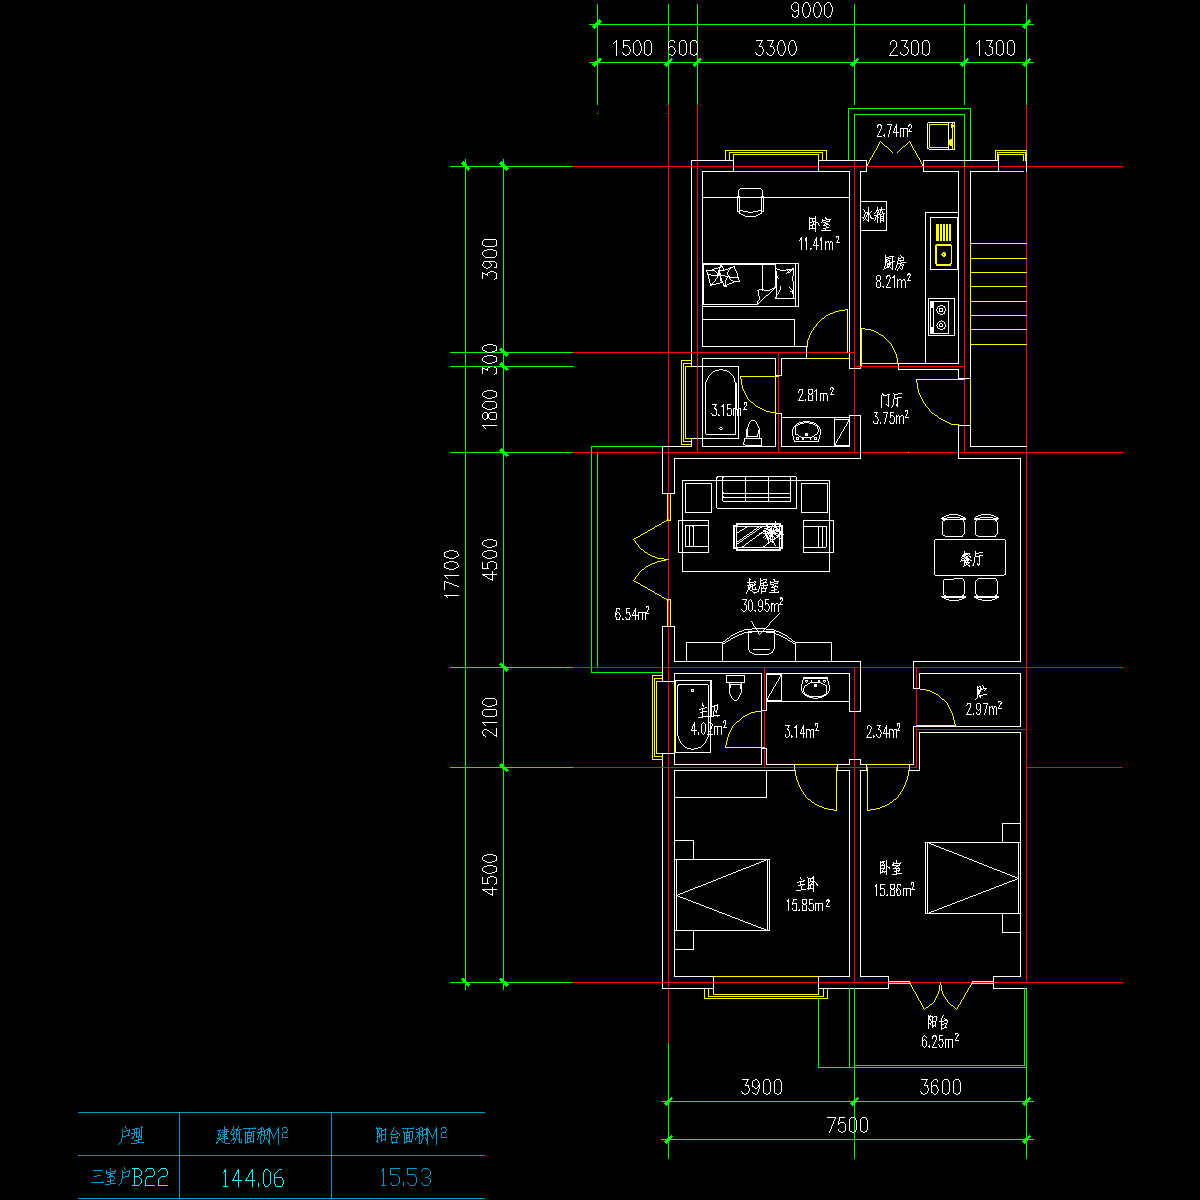 板式多层一梯两户三室一厅二卫户型CAD图纸(144/144)